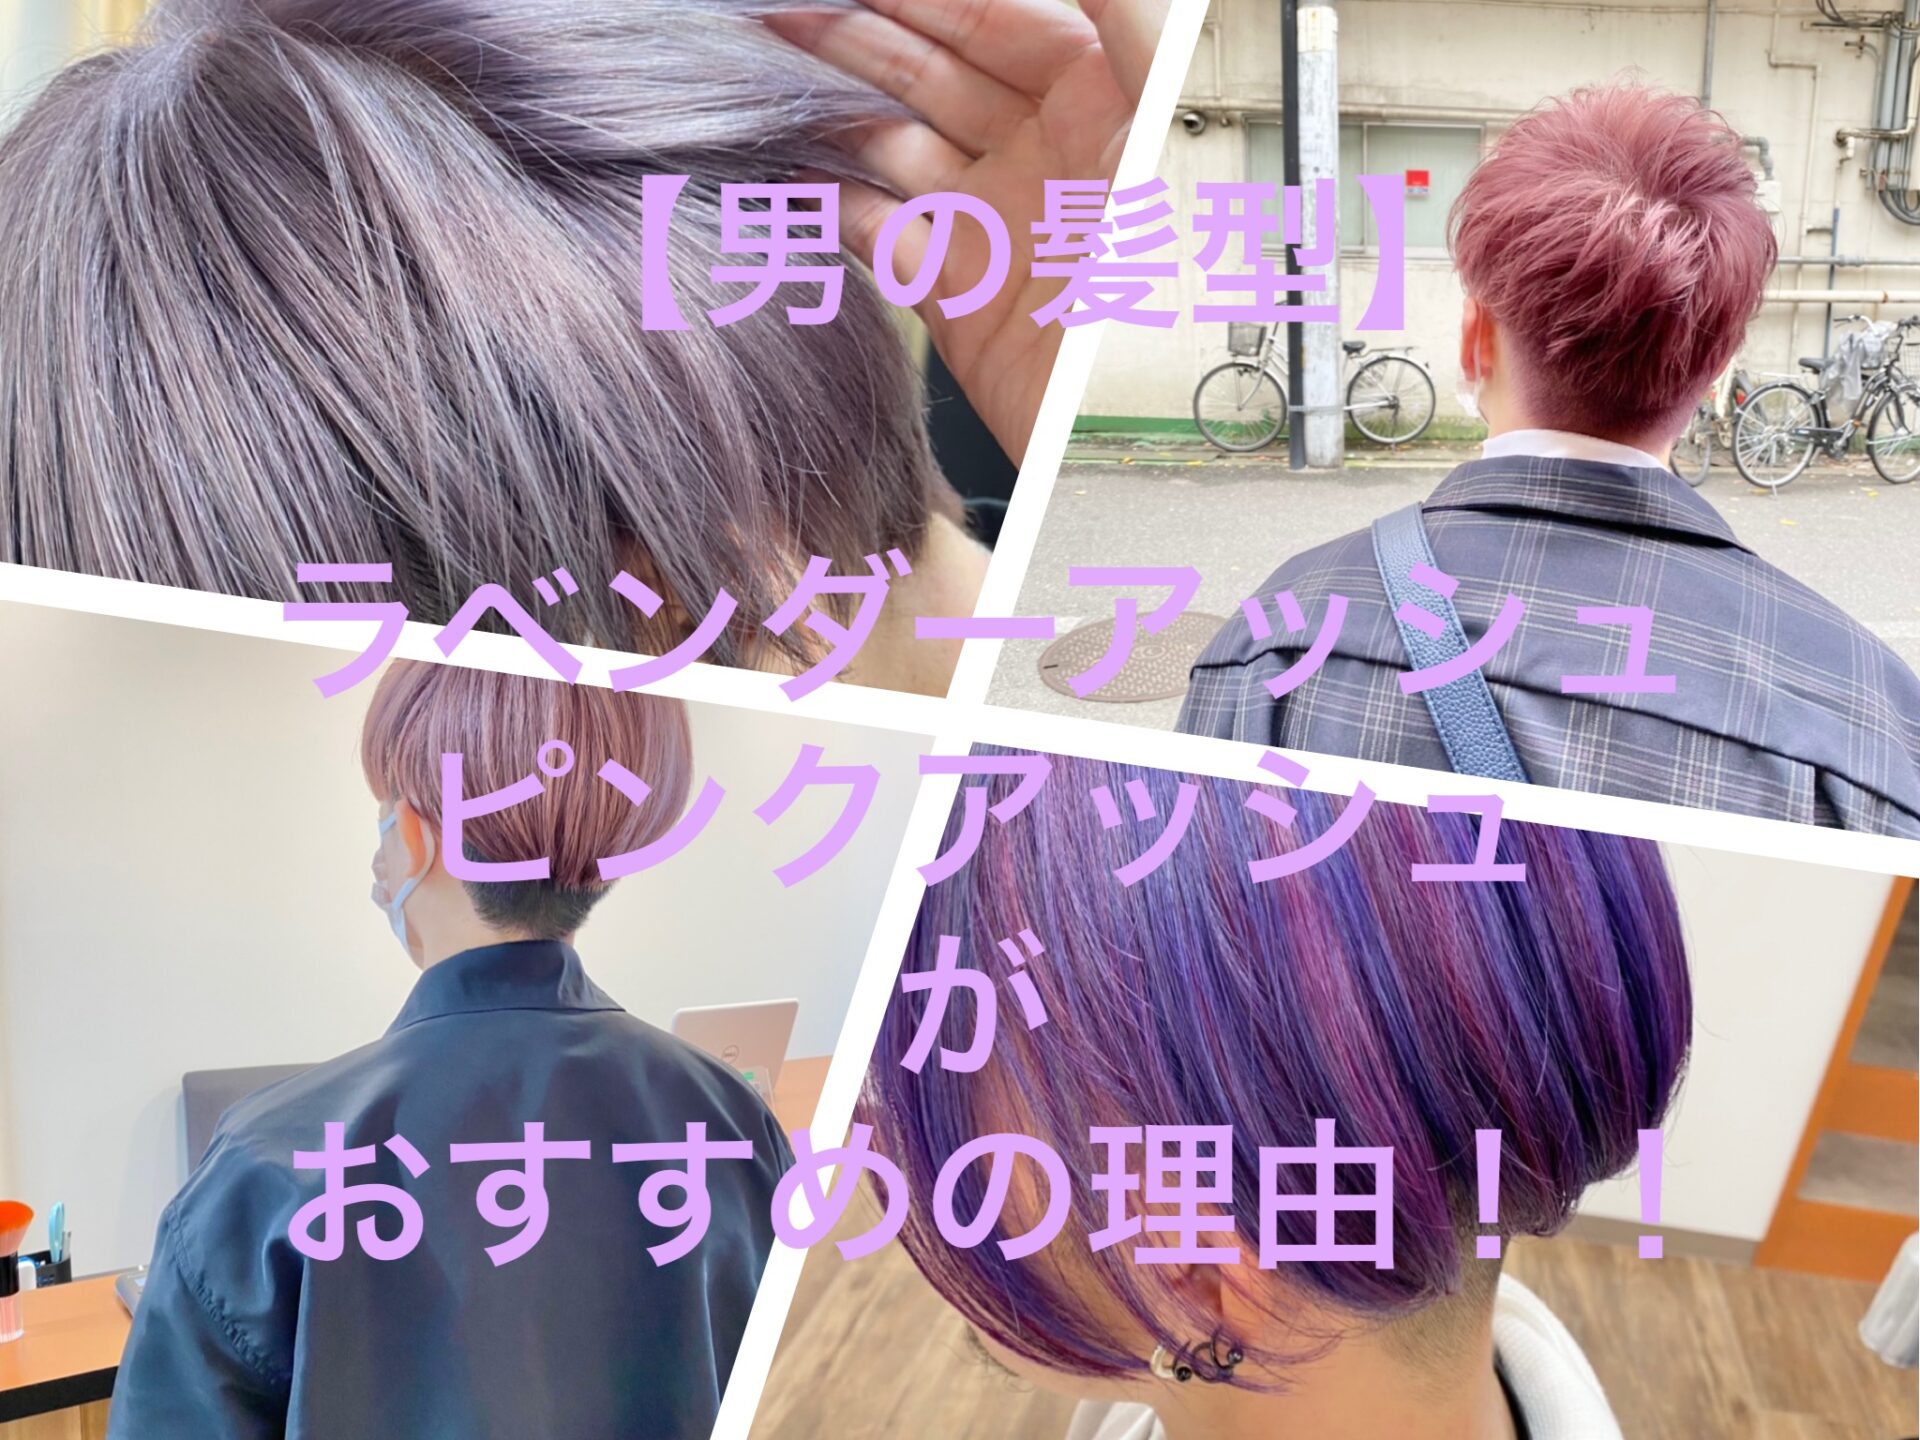 男の髪型 ラベンダーアッシュ ピンクアッシュ パープル ムラサキが超人気でおすすめ 髪トレブログ